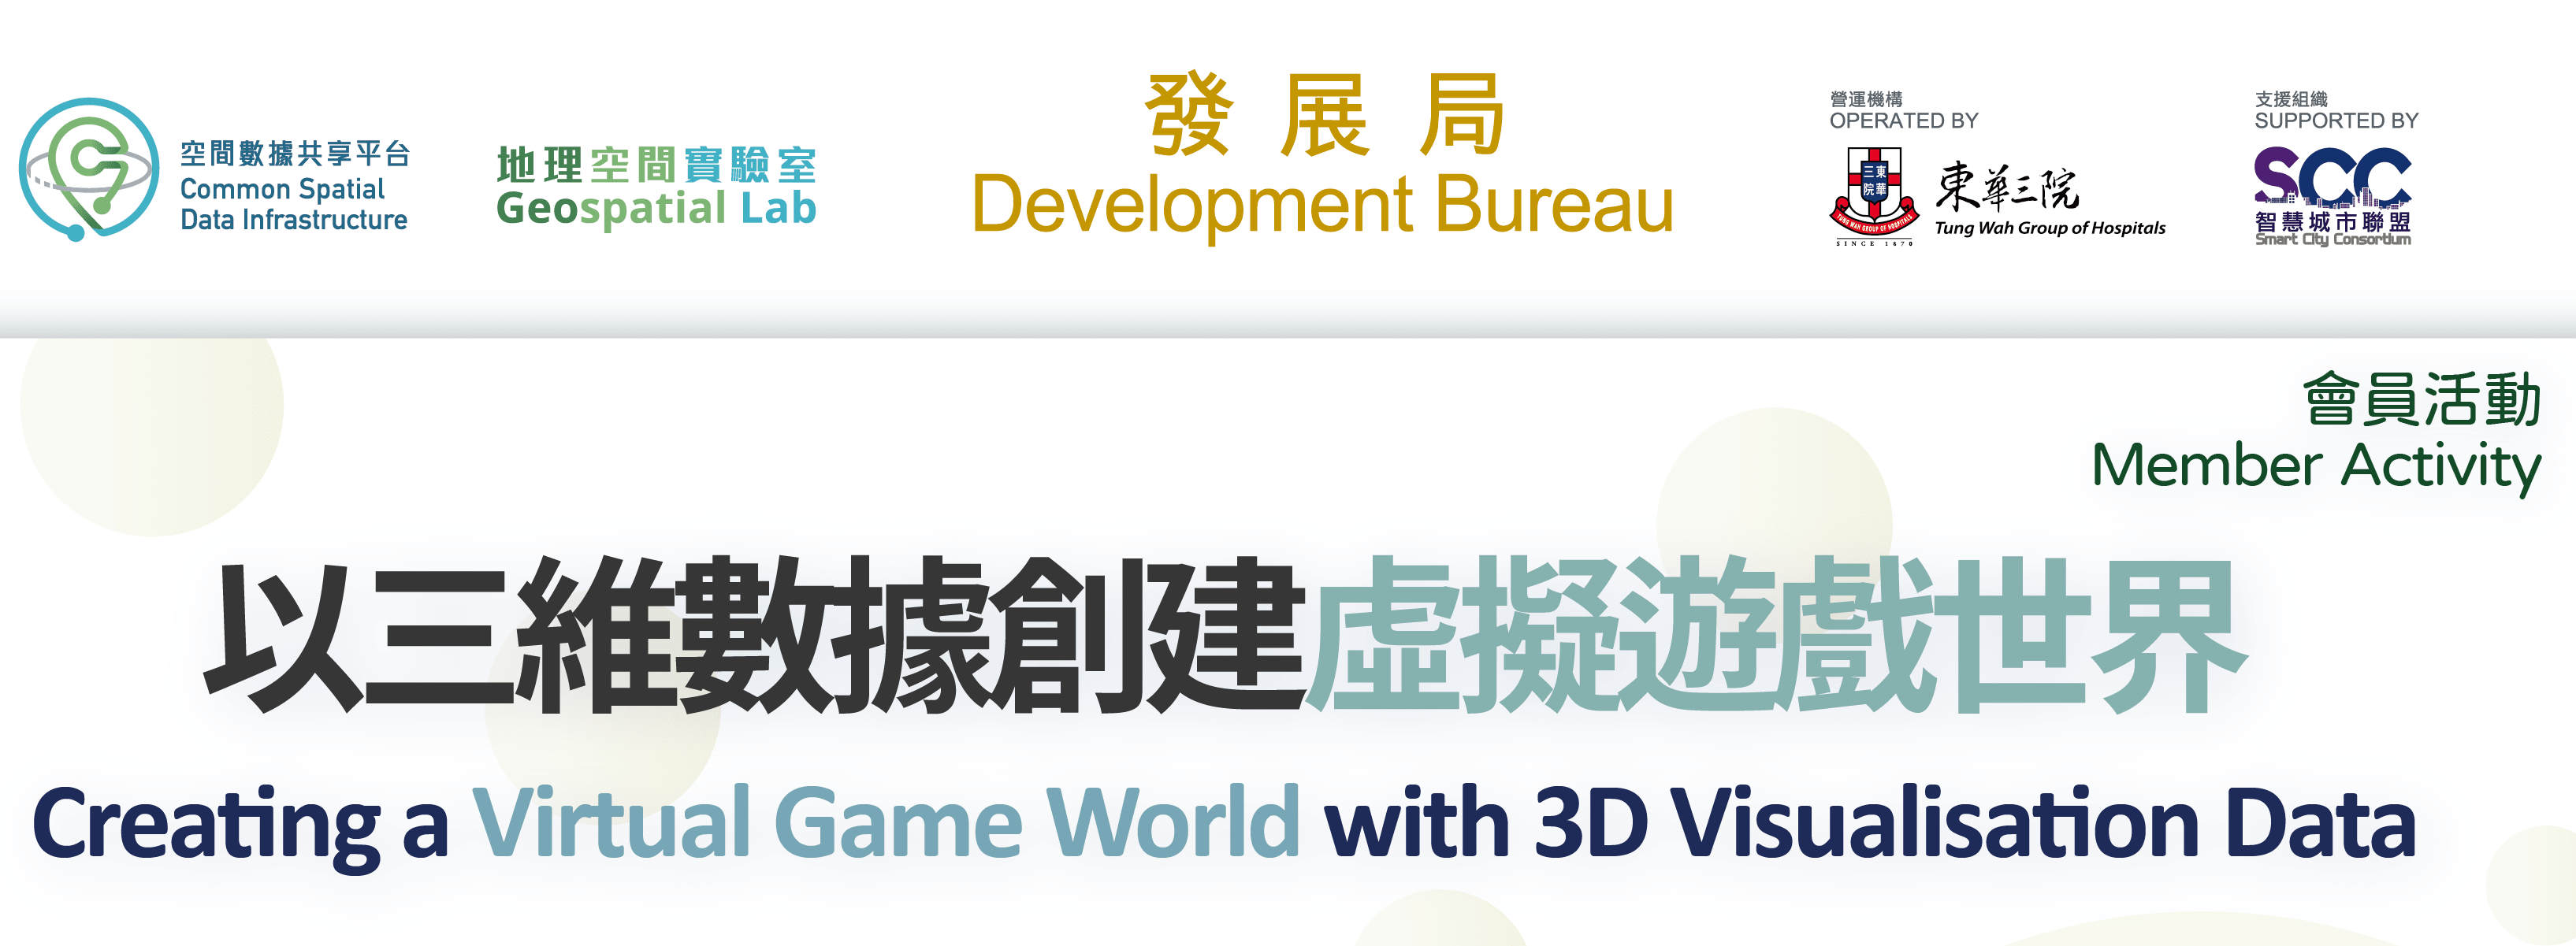 會員活動  「以三維數據創建虛擬遊戲世界」